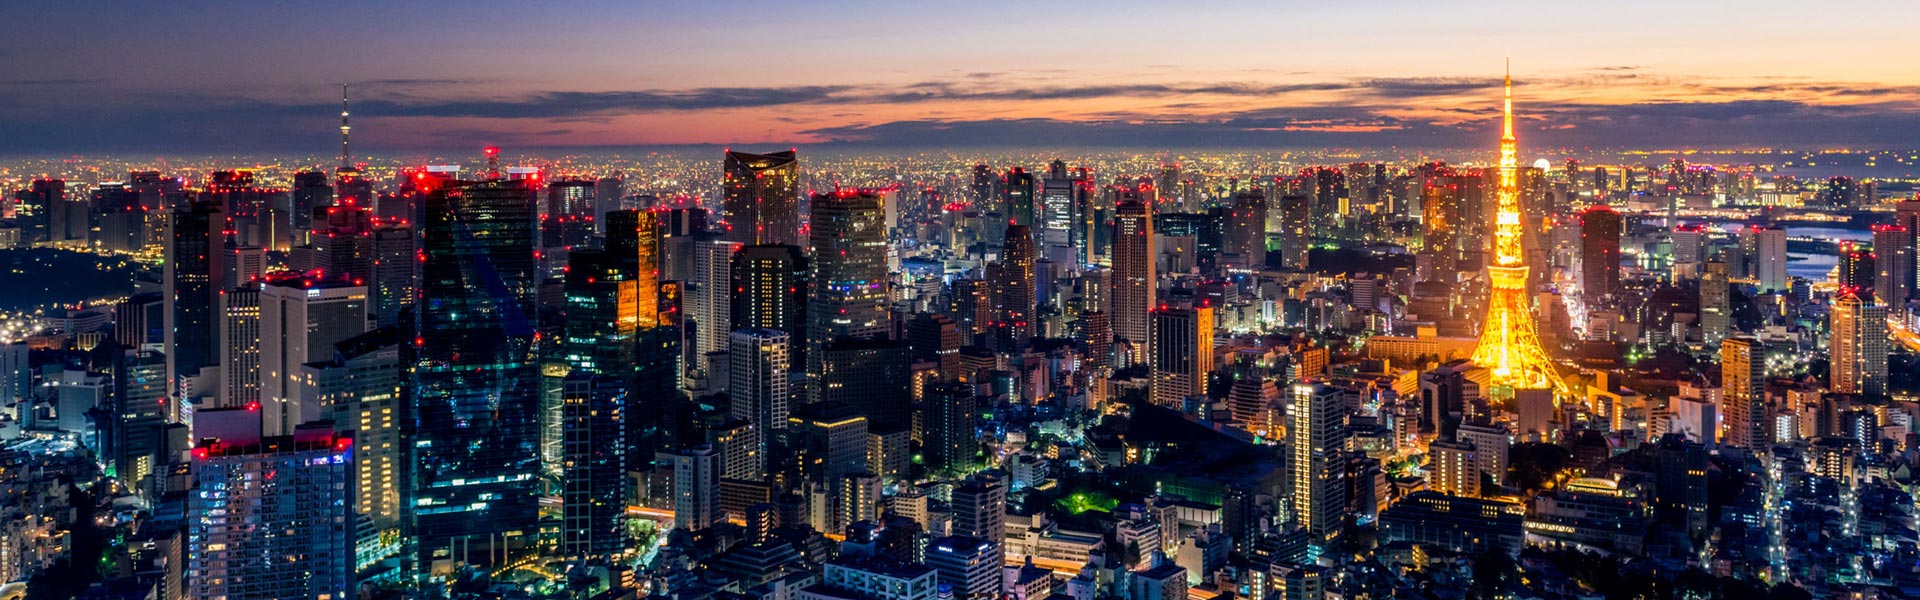 Tokyo at dawn